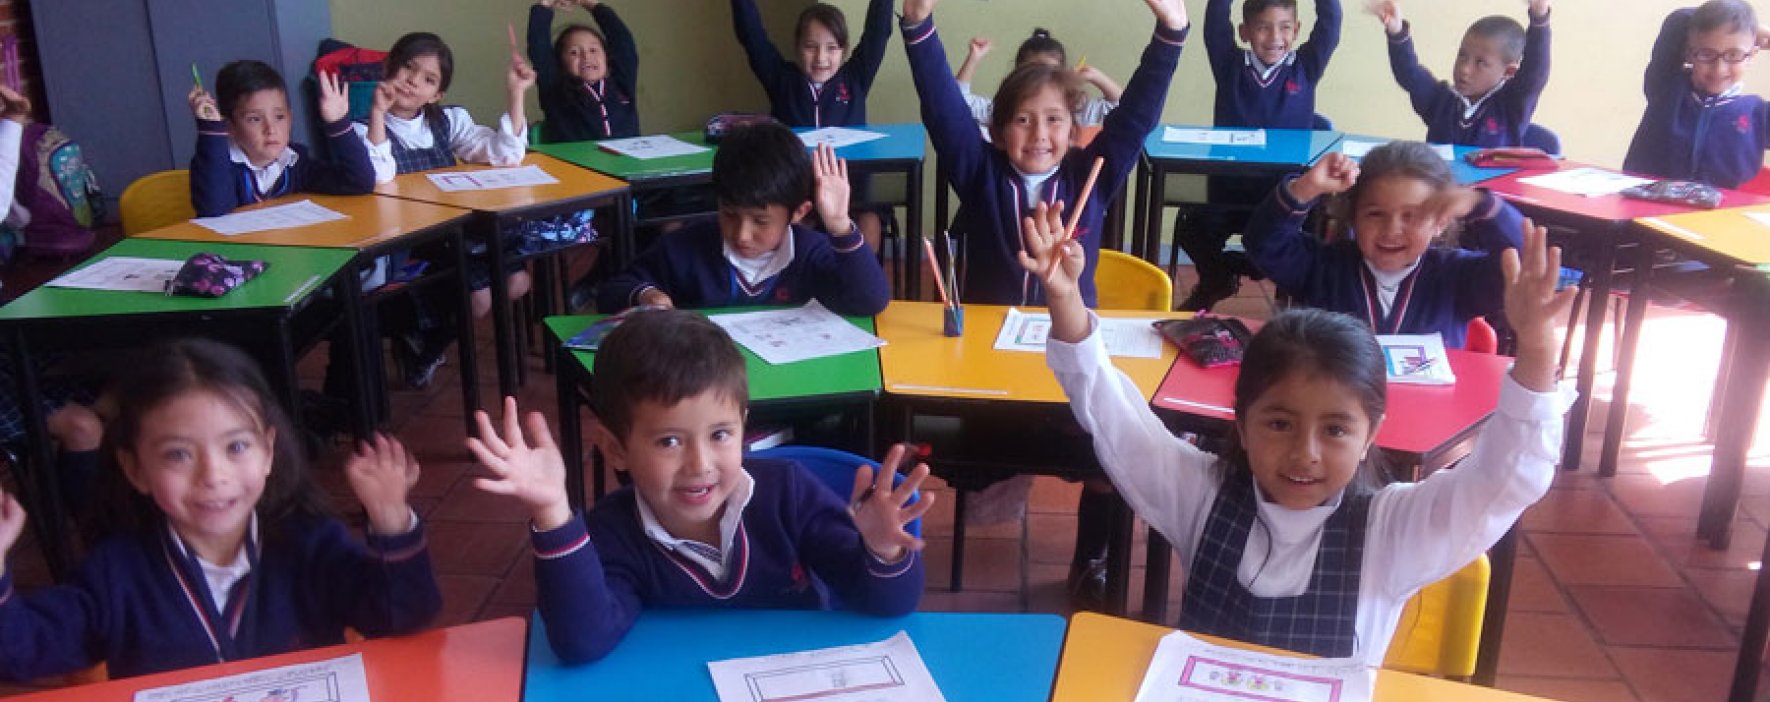 Matrículas abiertas, Institución Educativa Compartir Suba, Matriculas educativas, Suba, Bogotá, Cupos disponibles 